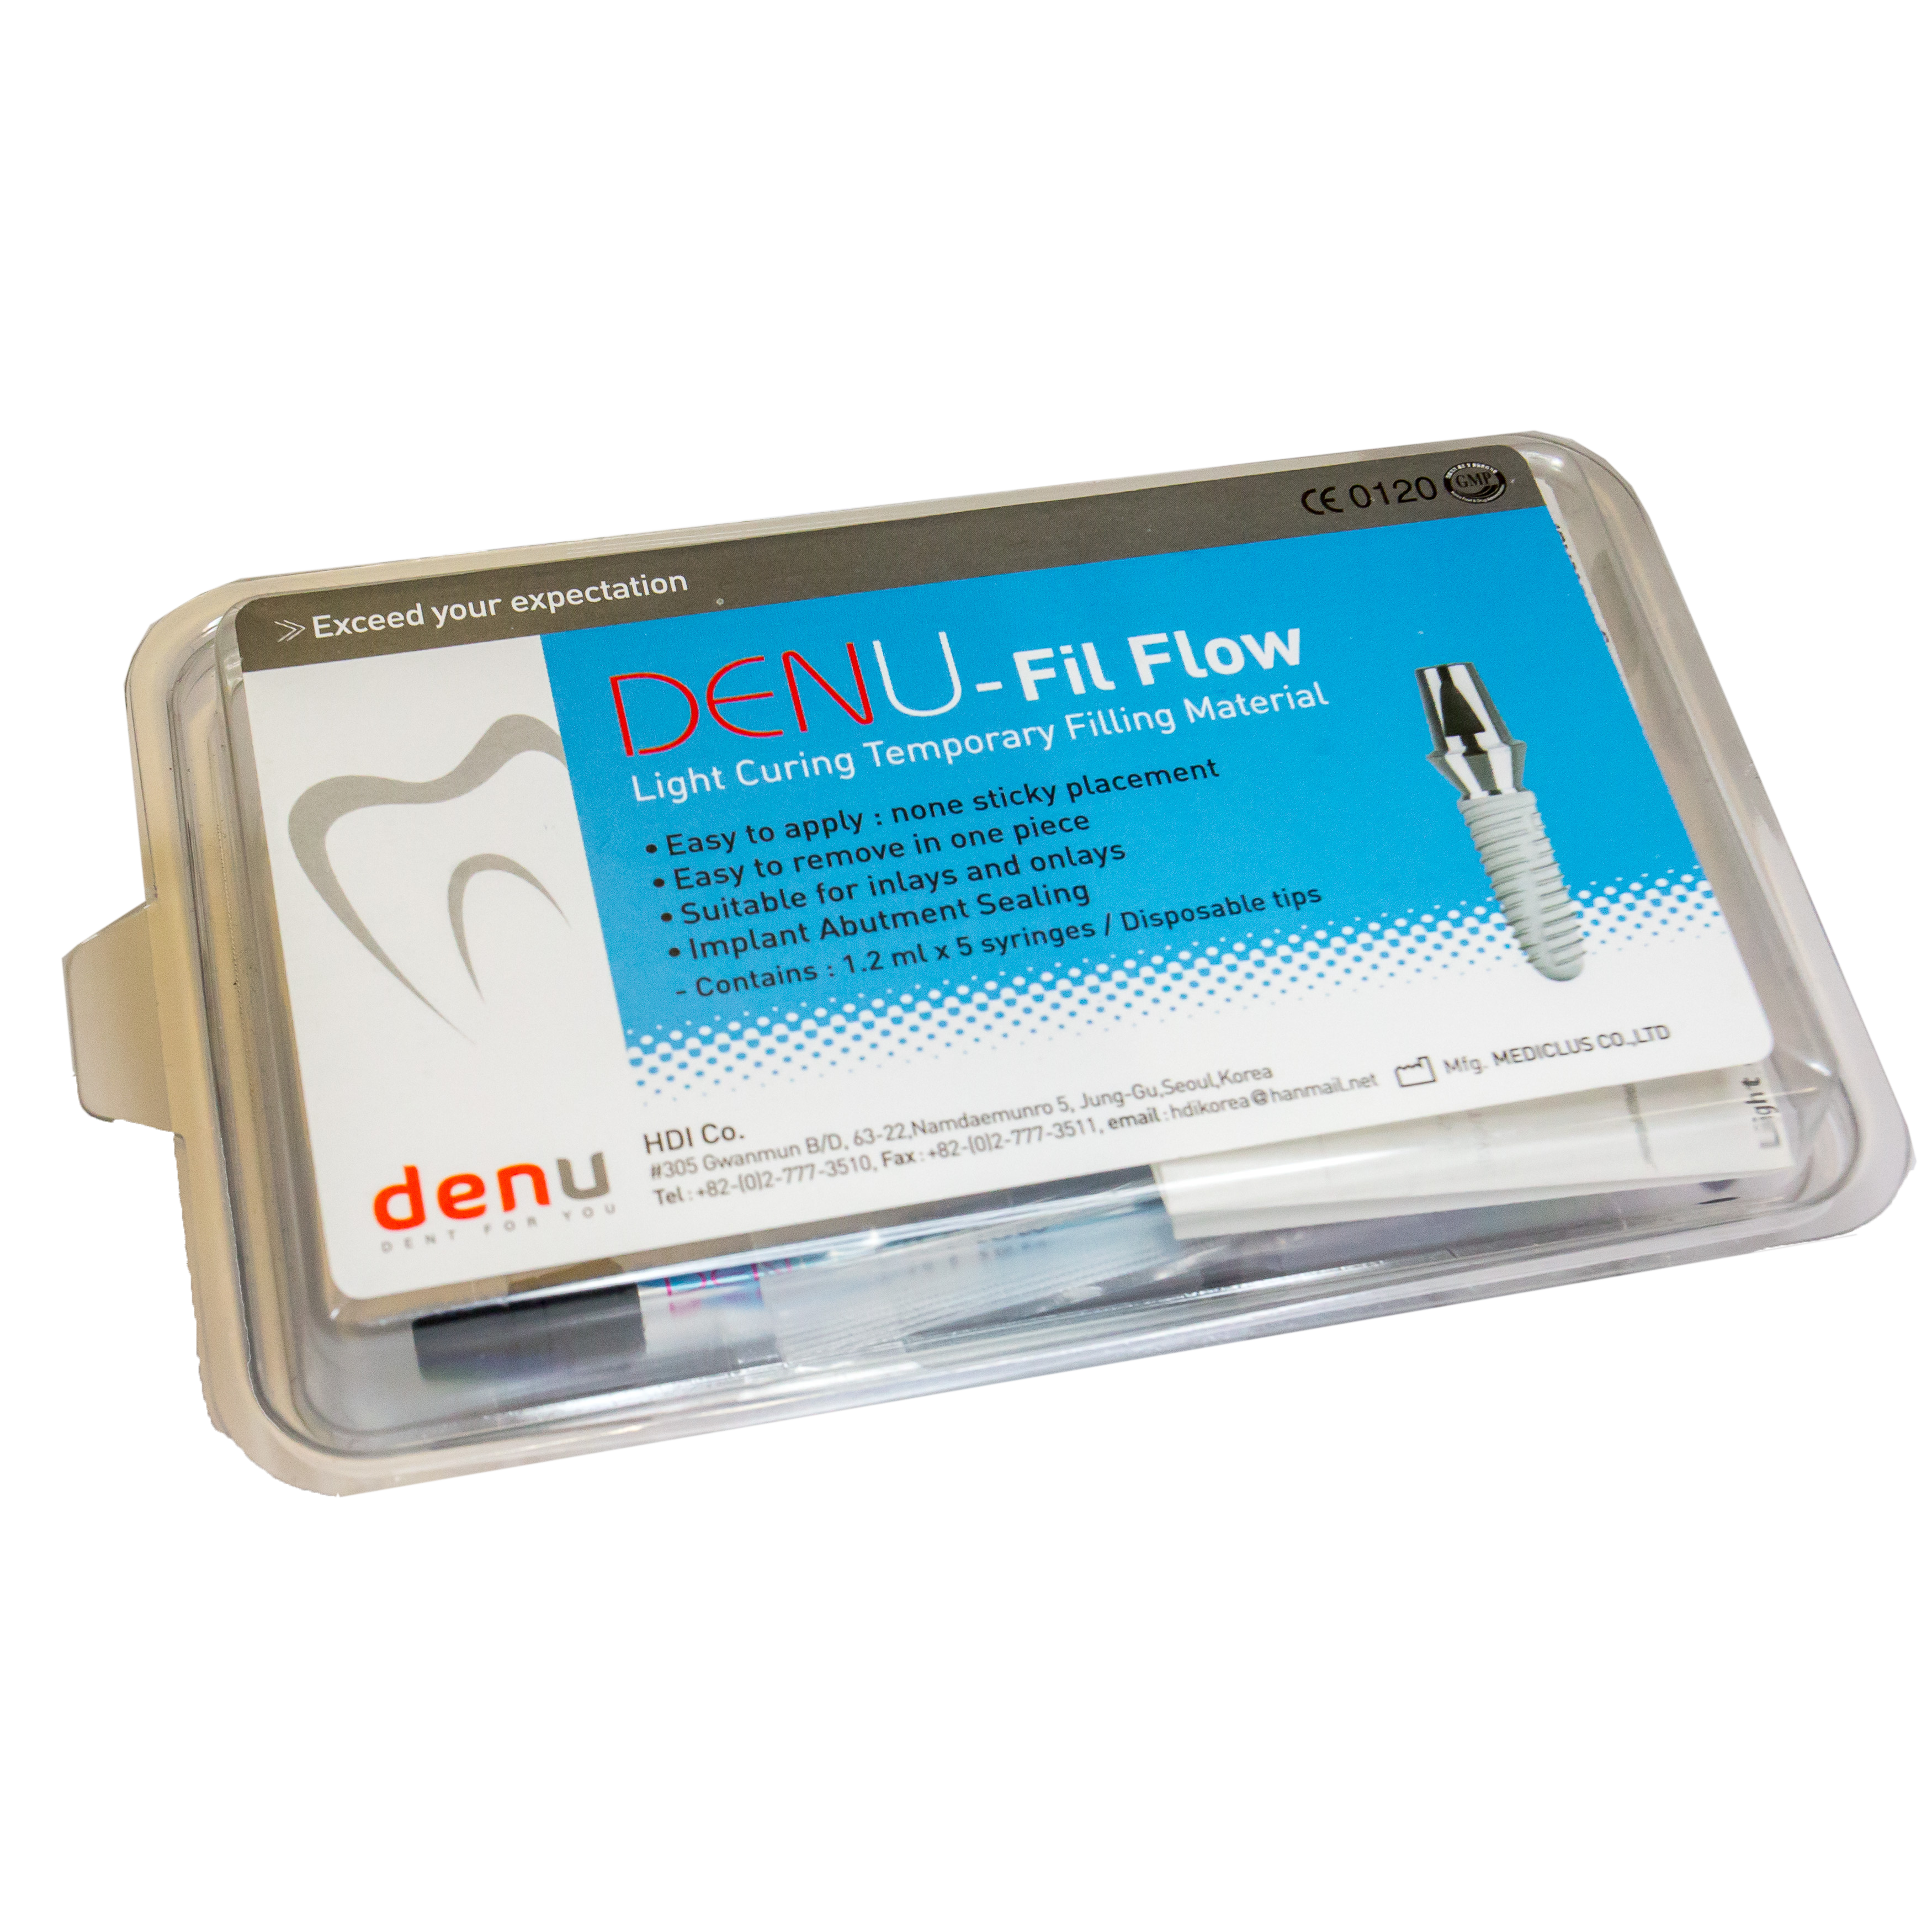 DENU fil flow, implantátumfejek lezárásához id. foly. tömőanyag, 5x1,2 ml (2g) + 10 db kanül